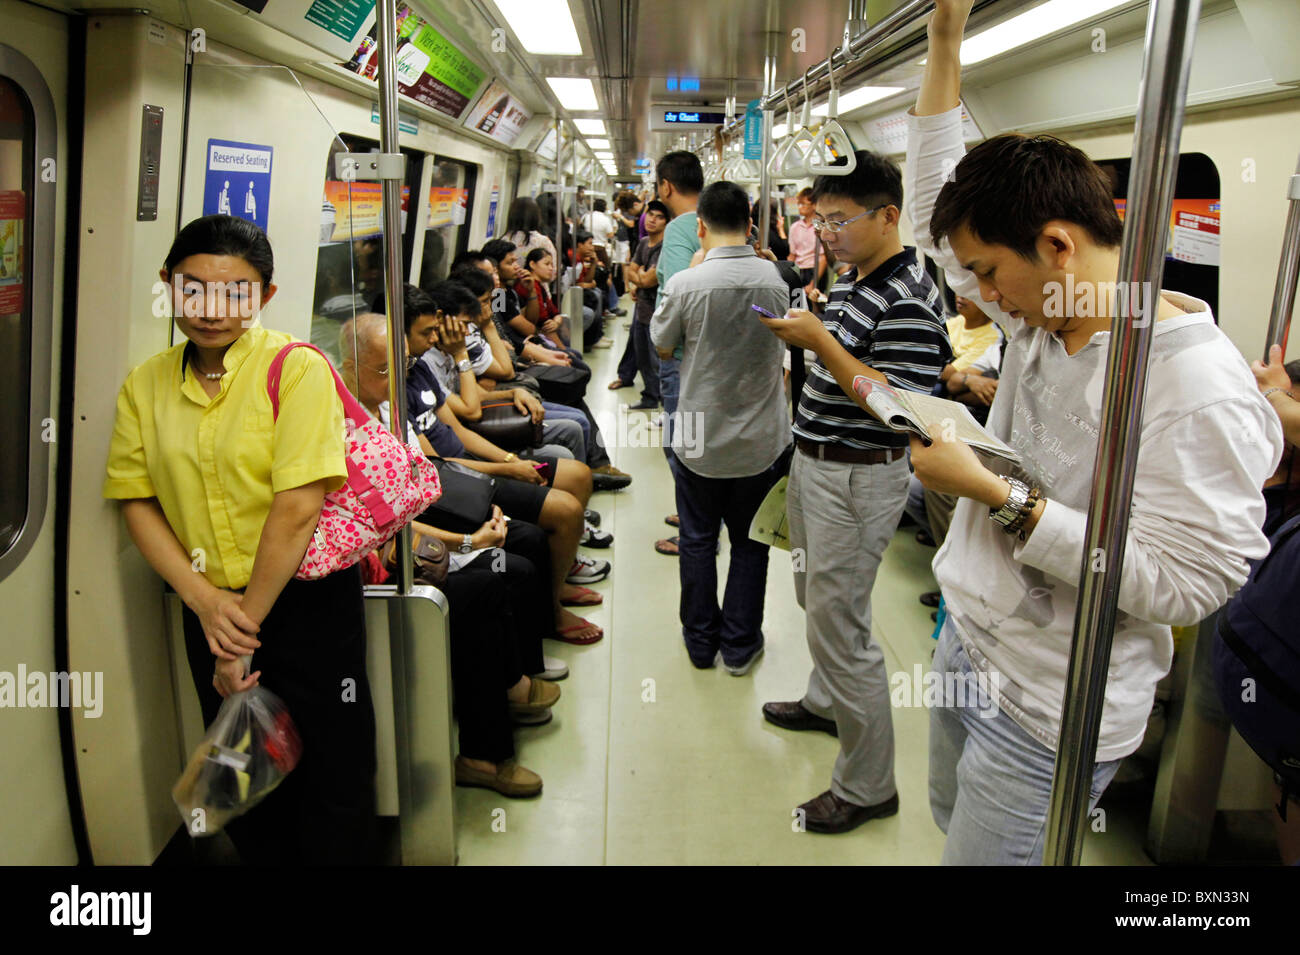 Singapur: Passagiere in einem Auto der MRT (Mass Rapid Transport) u-Bahn Zug system Stockfoto